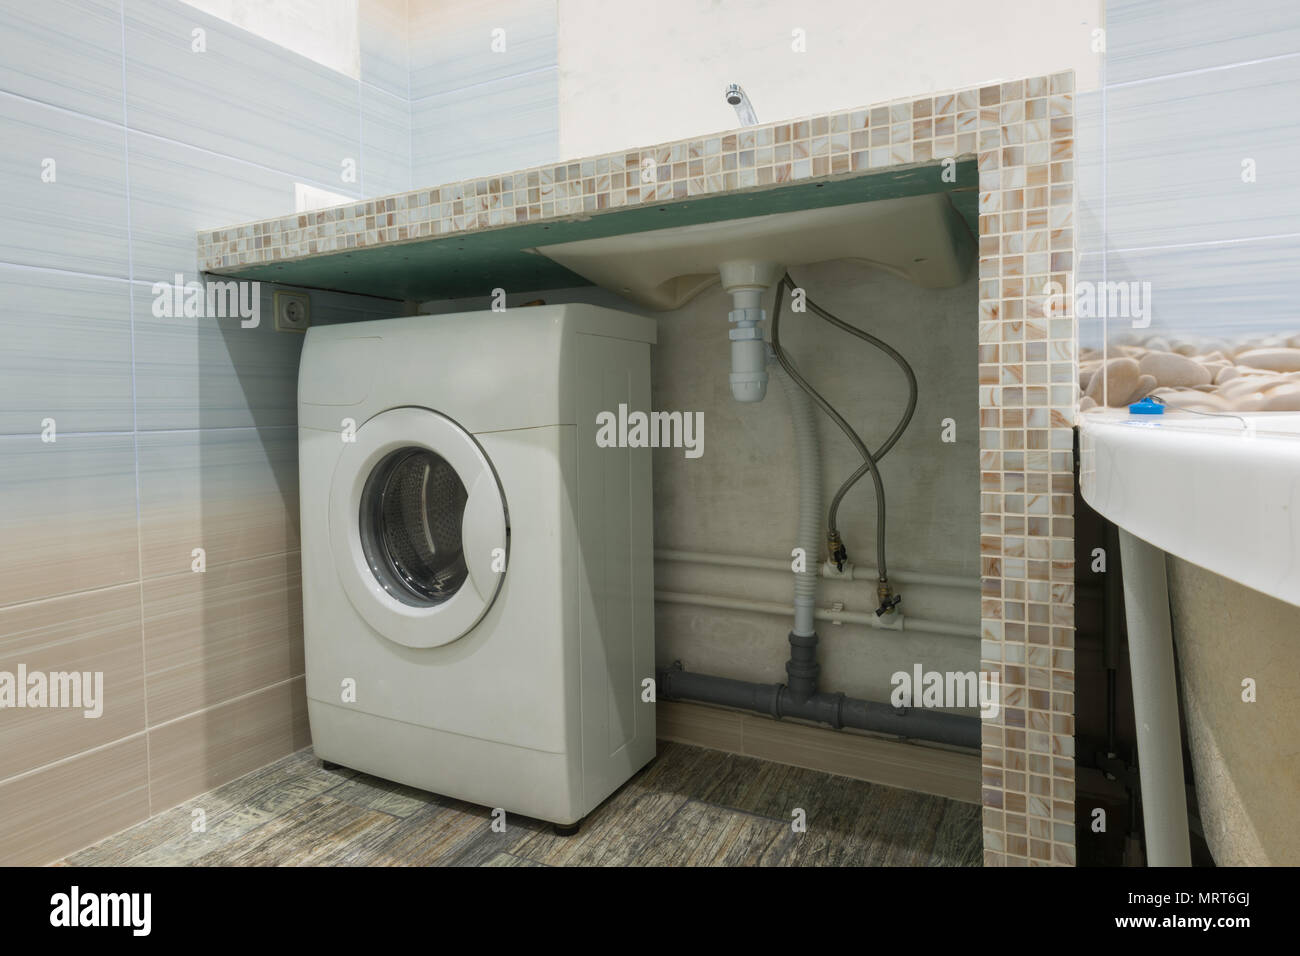 Hausgemachte Sockel im Waschbecken im Bad, Platz für eine Waschmaschine  Stockfotografie - Alamy